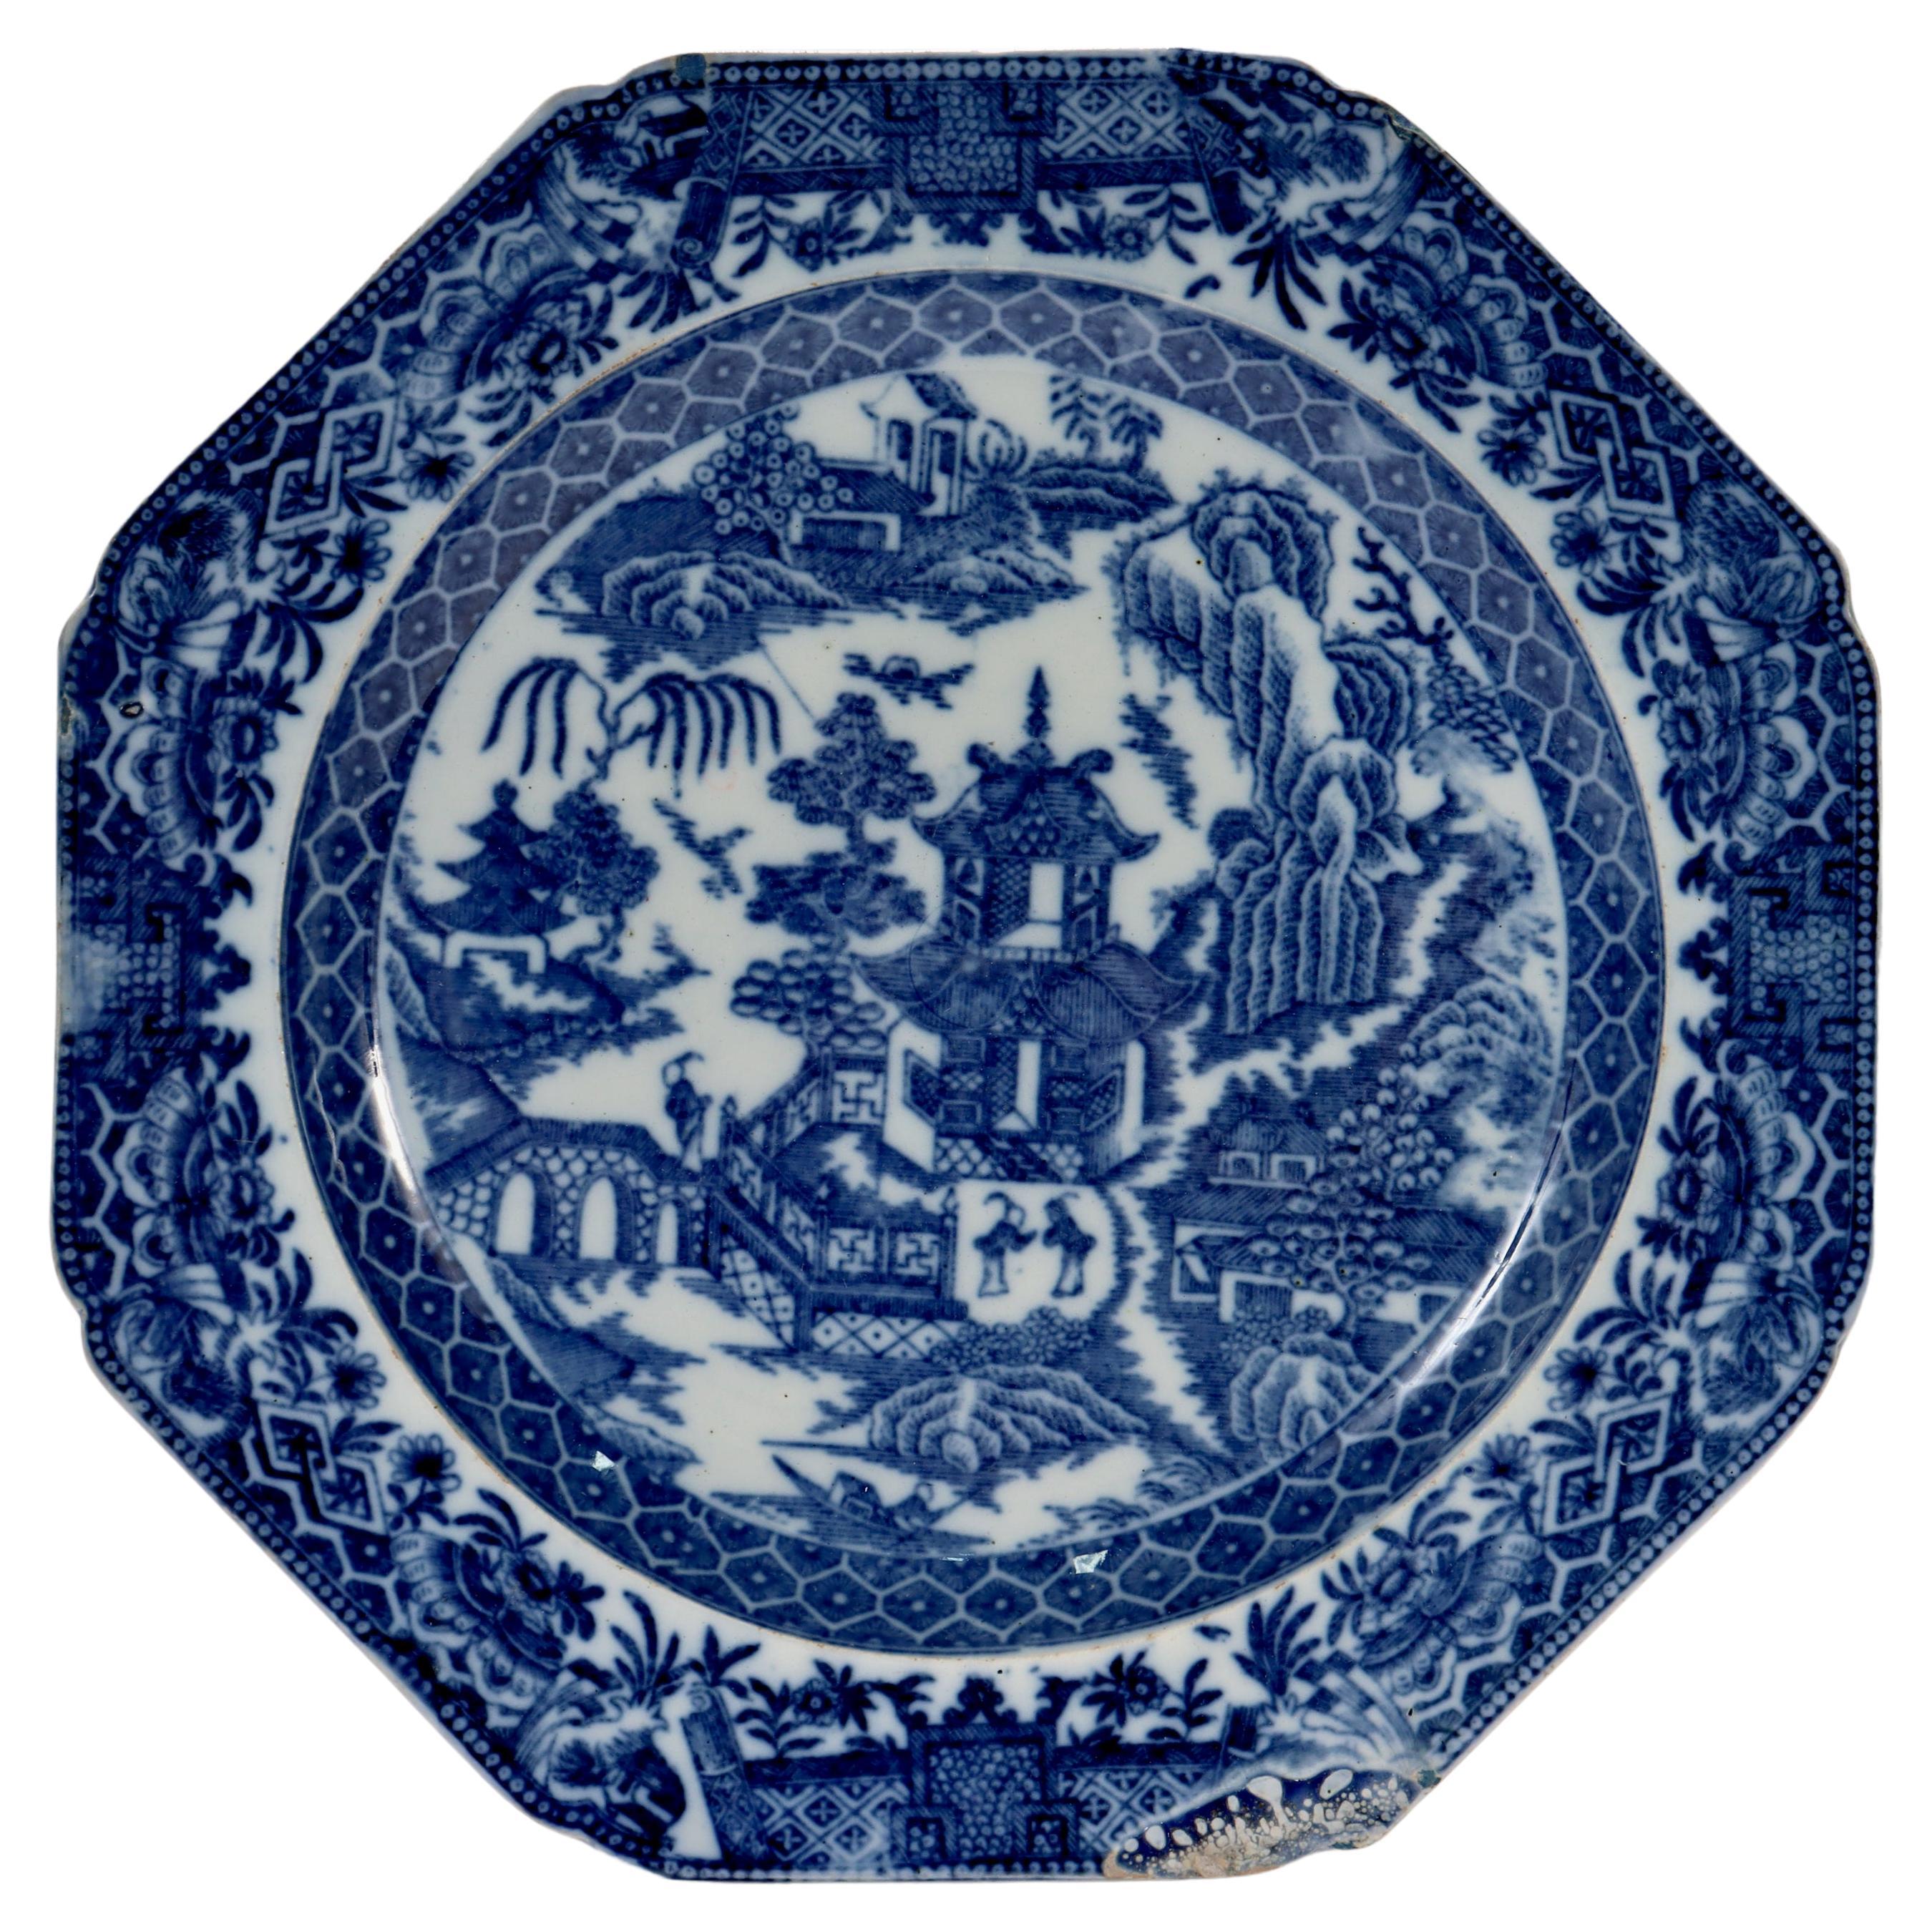 Antike englische Longport zugeschrieben Creamware blau Weide Transfer Teller